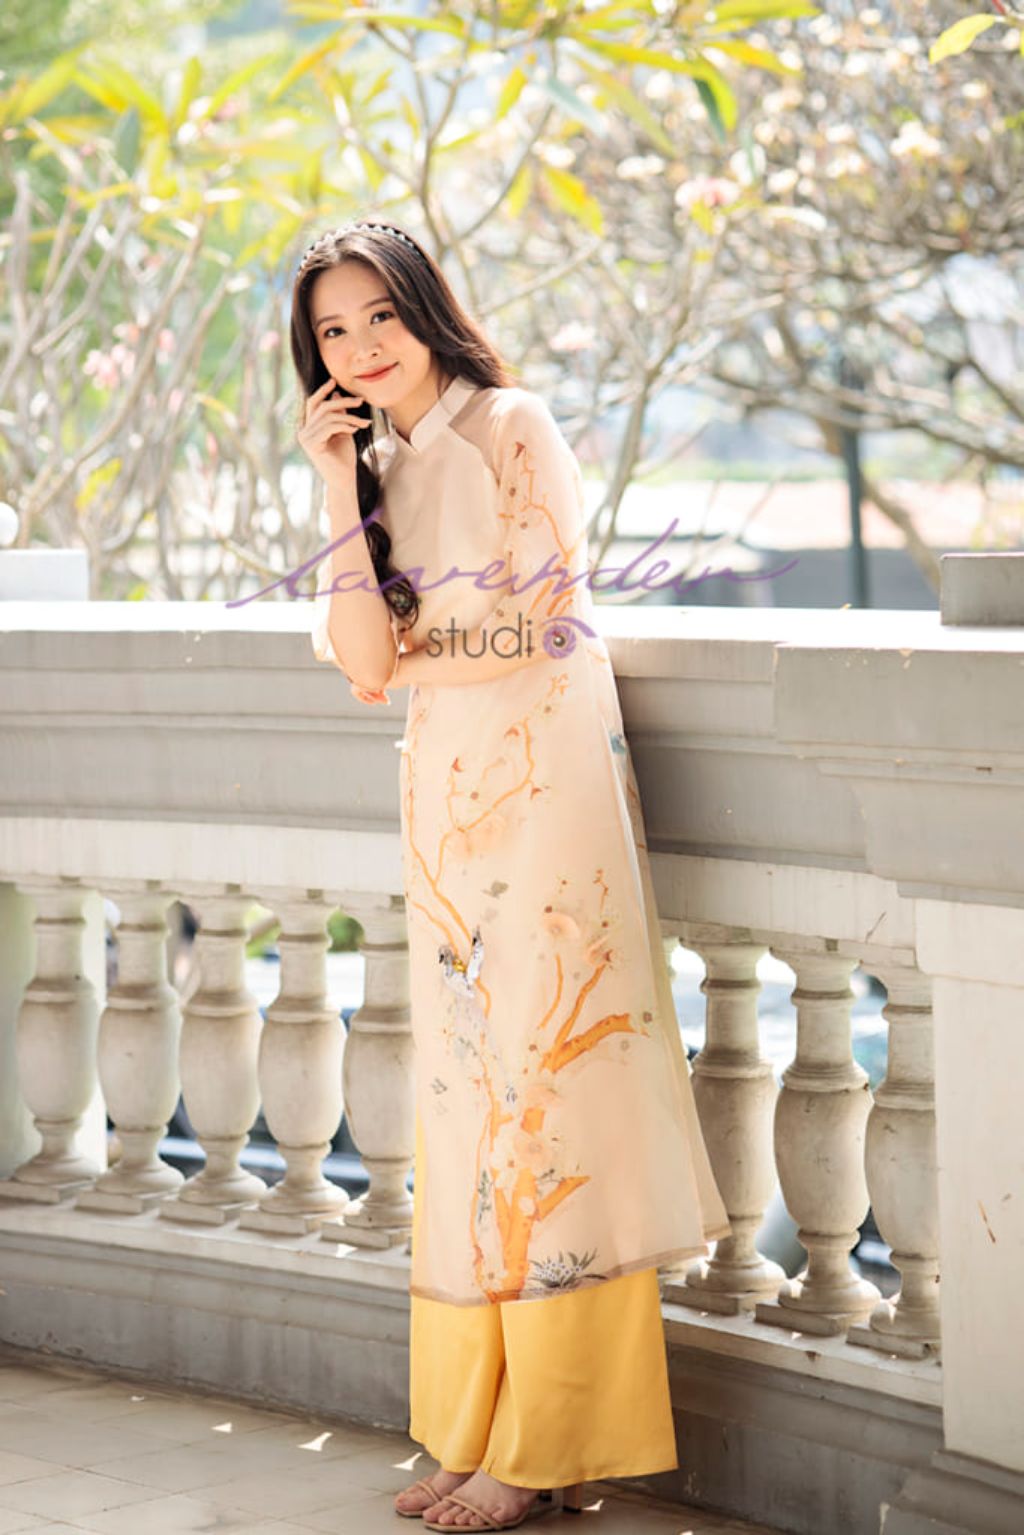 Áo dài Lavender là xưởng may chuyên thiết kế và cho thuê áo dài Tết ở Hà Nội giá rẻ, đẹp